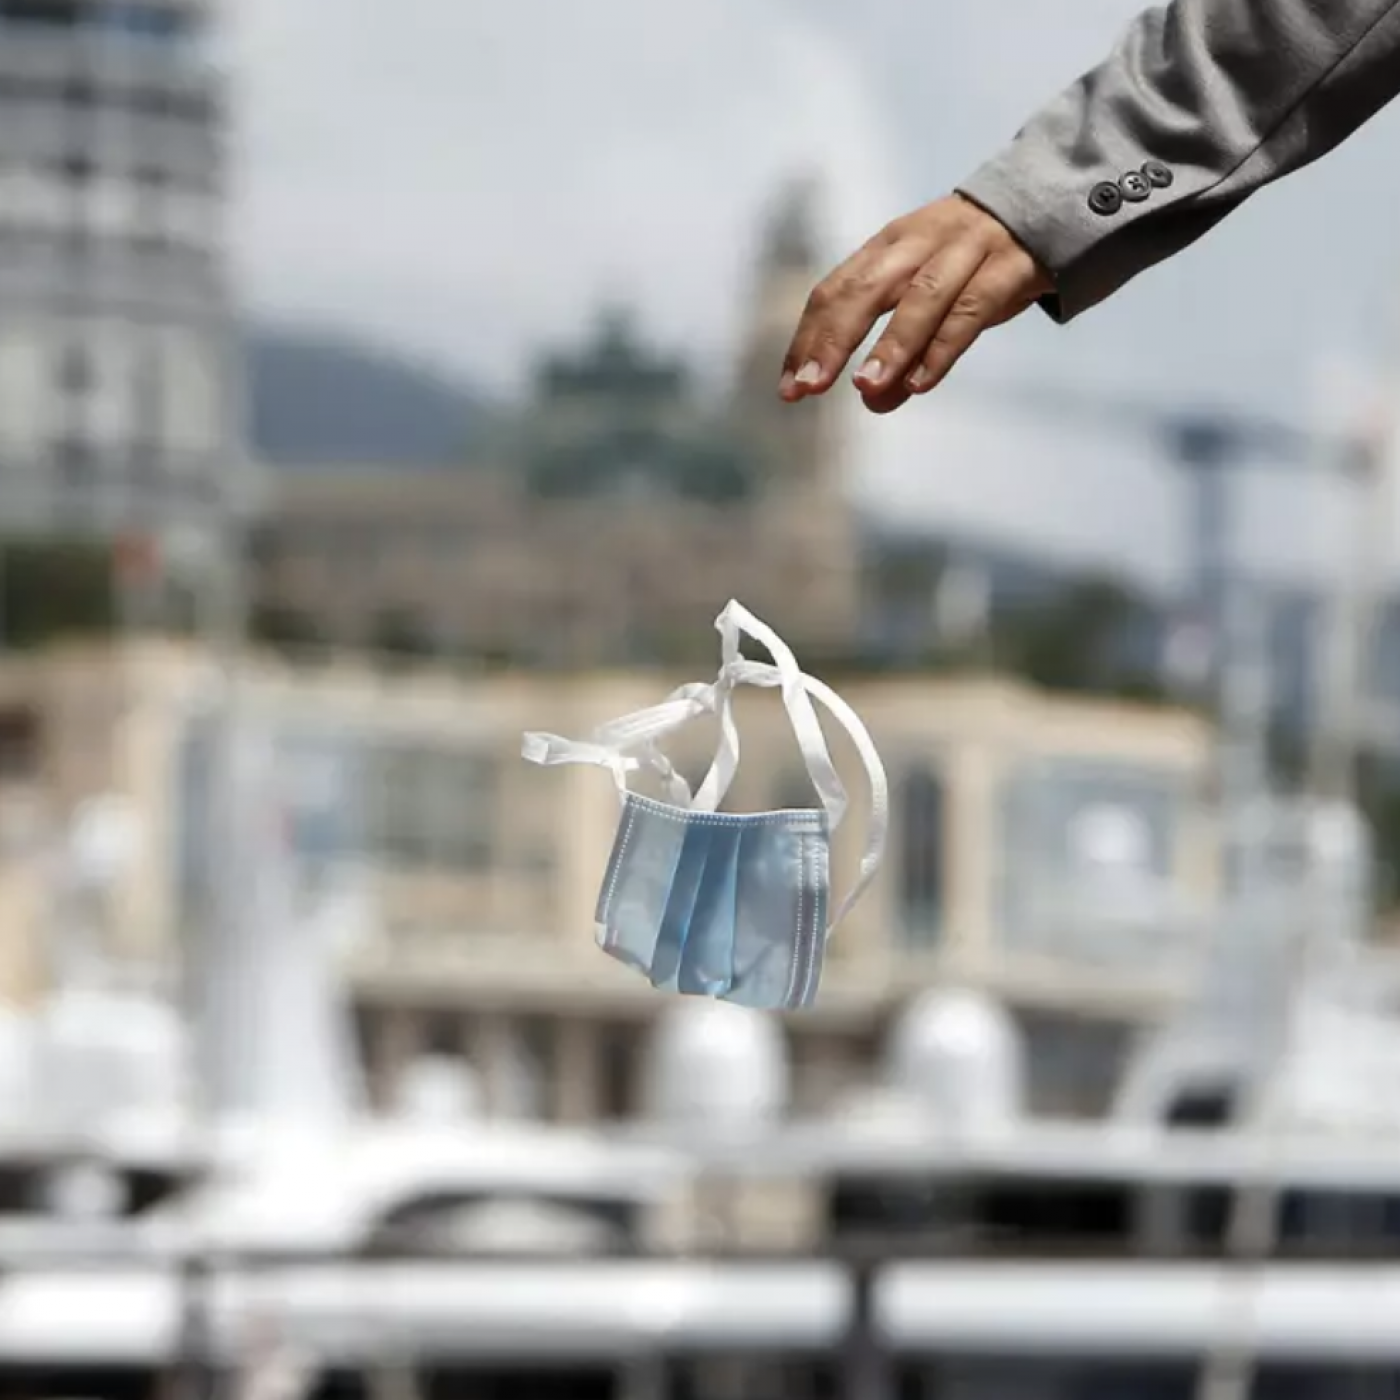 La Ville de Cannes dévoile un visuel contre les jets de masque sur la voie publique